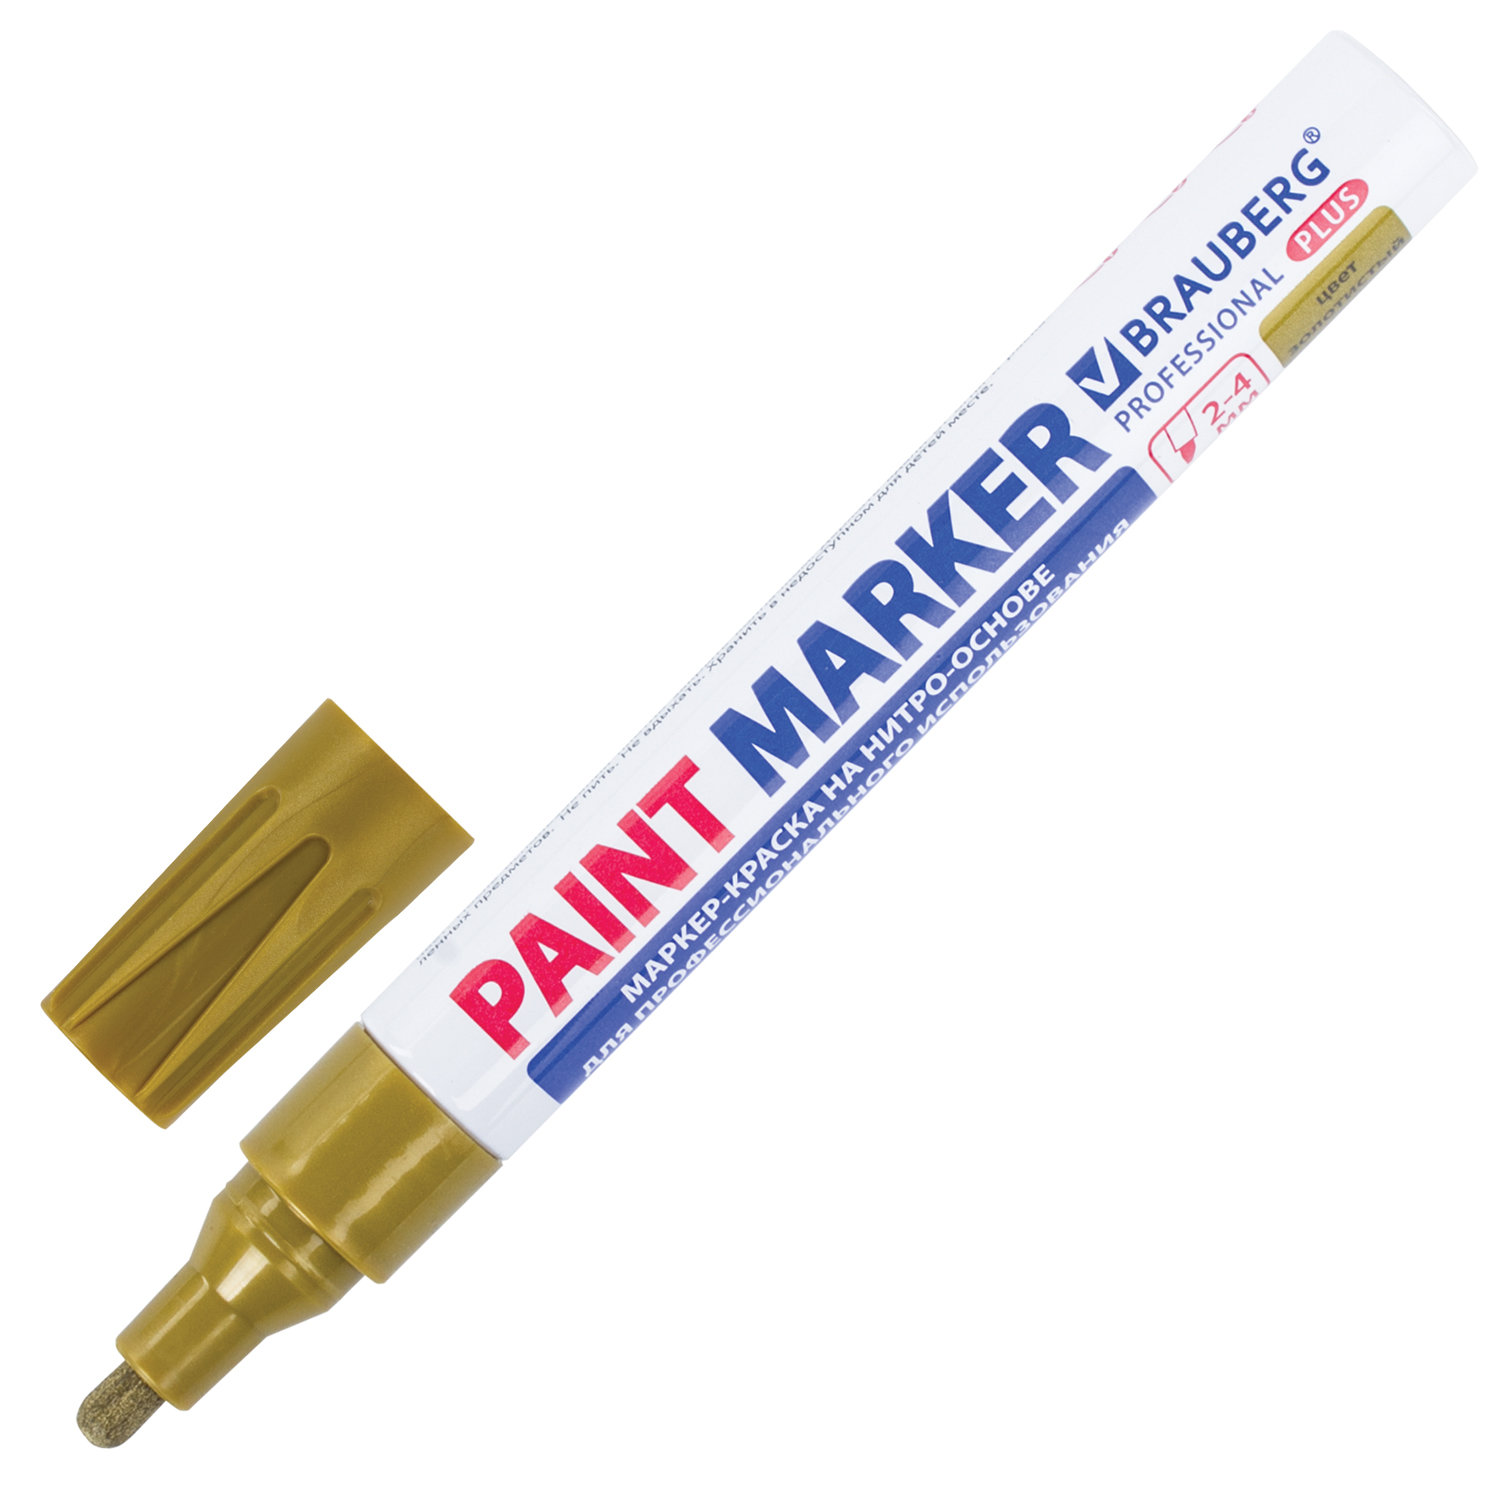 Маркер-краска лаковый Brauberg Professional Plus 151449, 4мм, золотистый, 12шт маркер для электриков artline 0 4 1 0 мм electricians marker оранжевый ekpelft 197